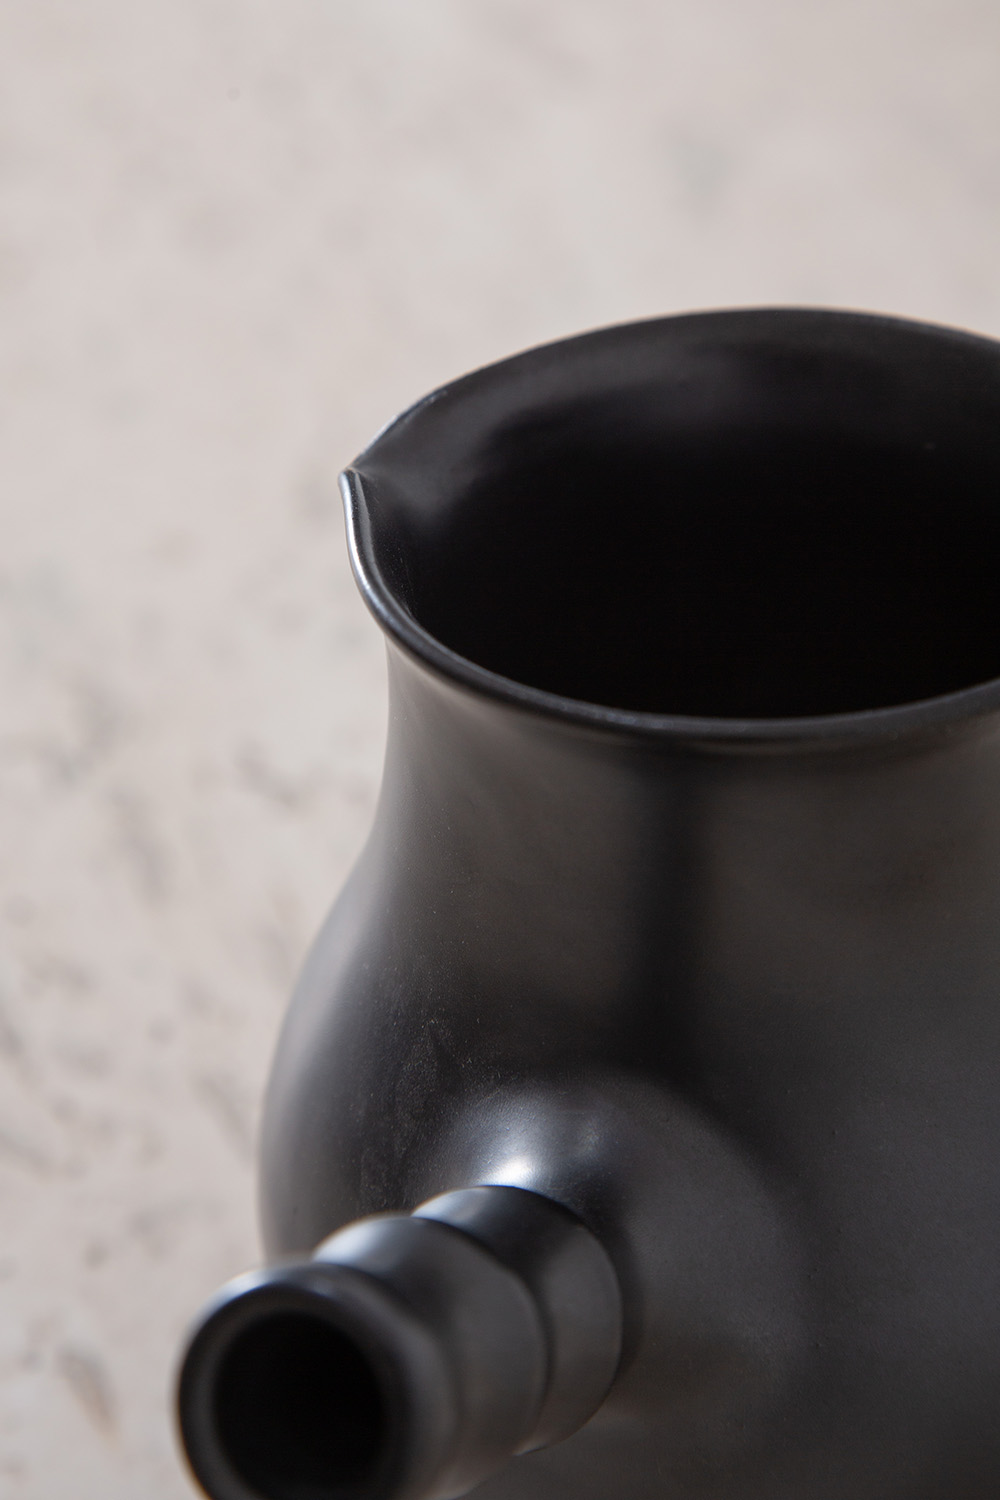 Vintage Pot in Ceramic and Black